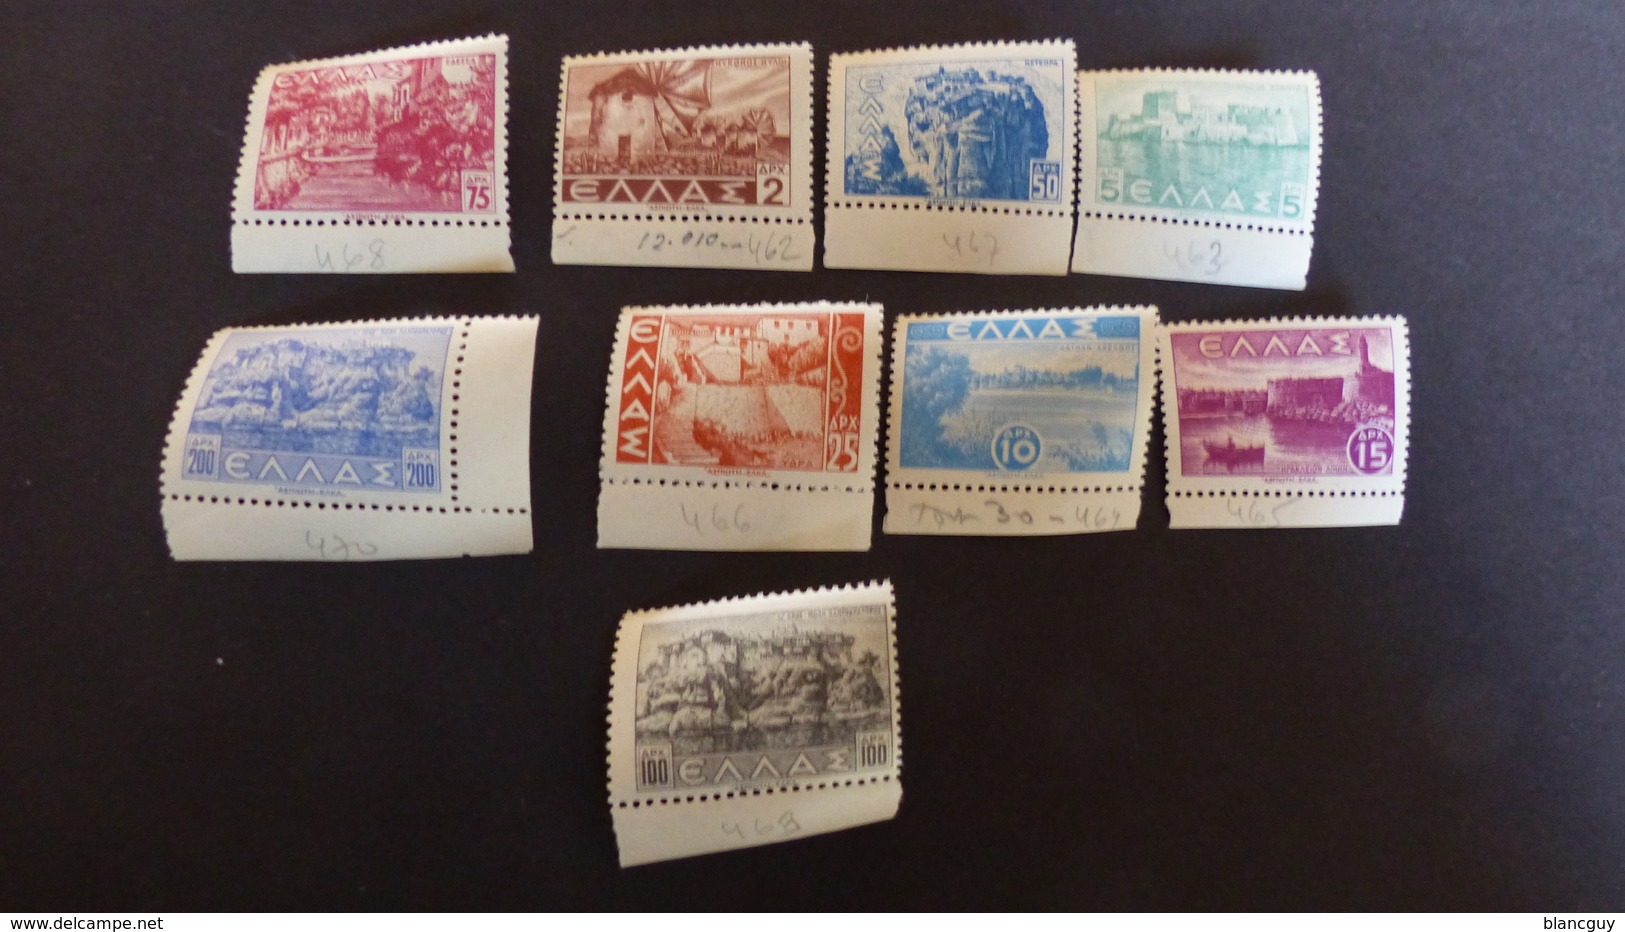 VRAC EUROPE - 1800 timbres d'Europe oblitérés, quelques neufs, tous différents